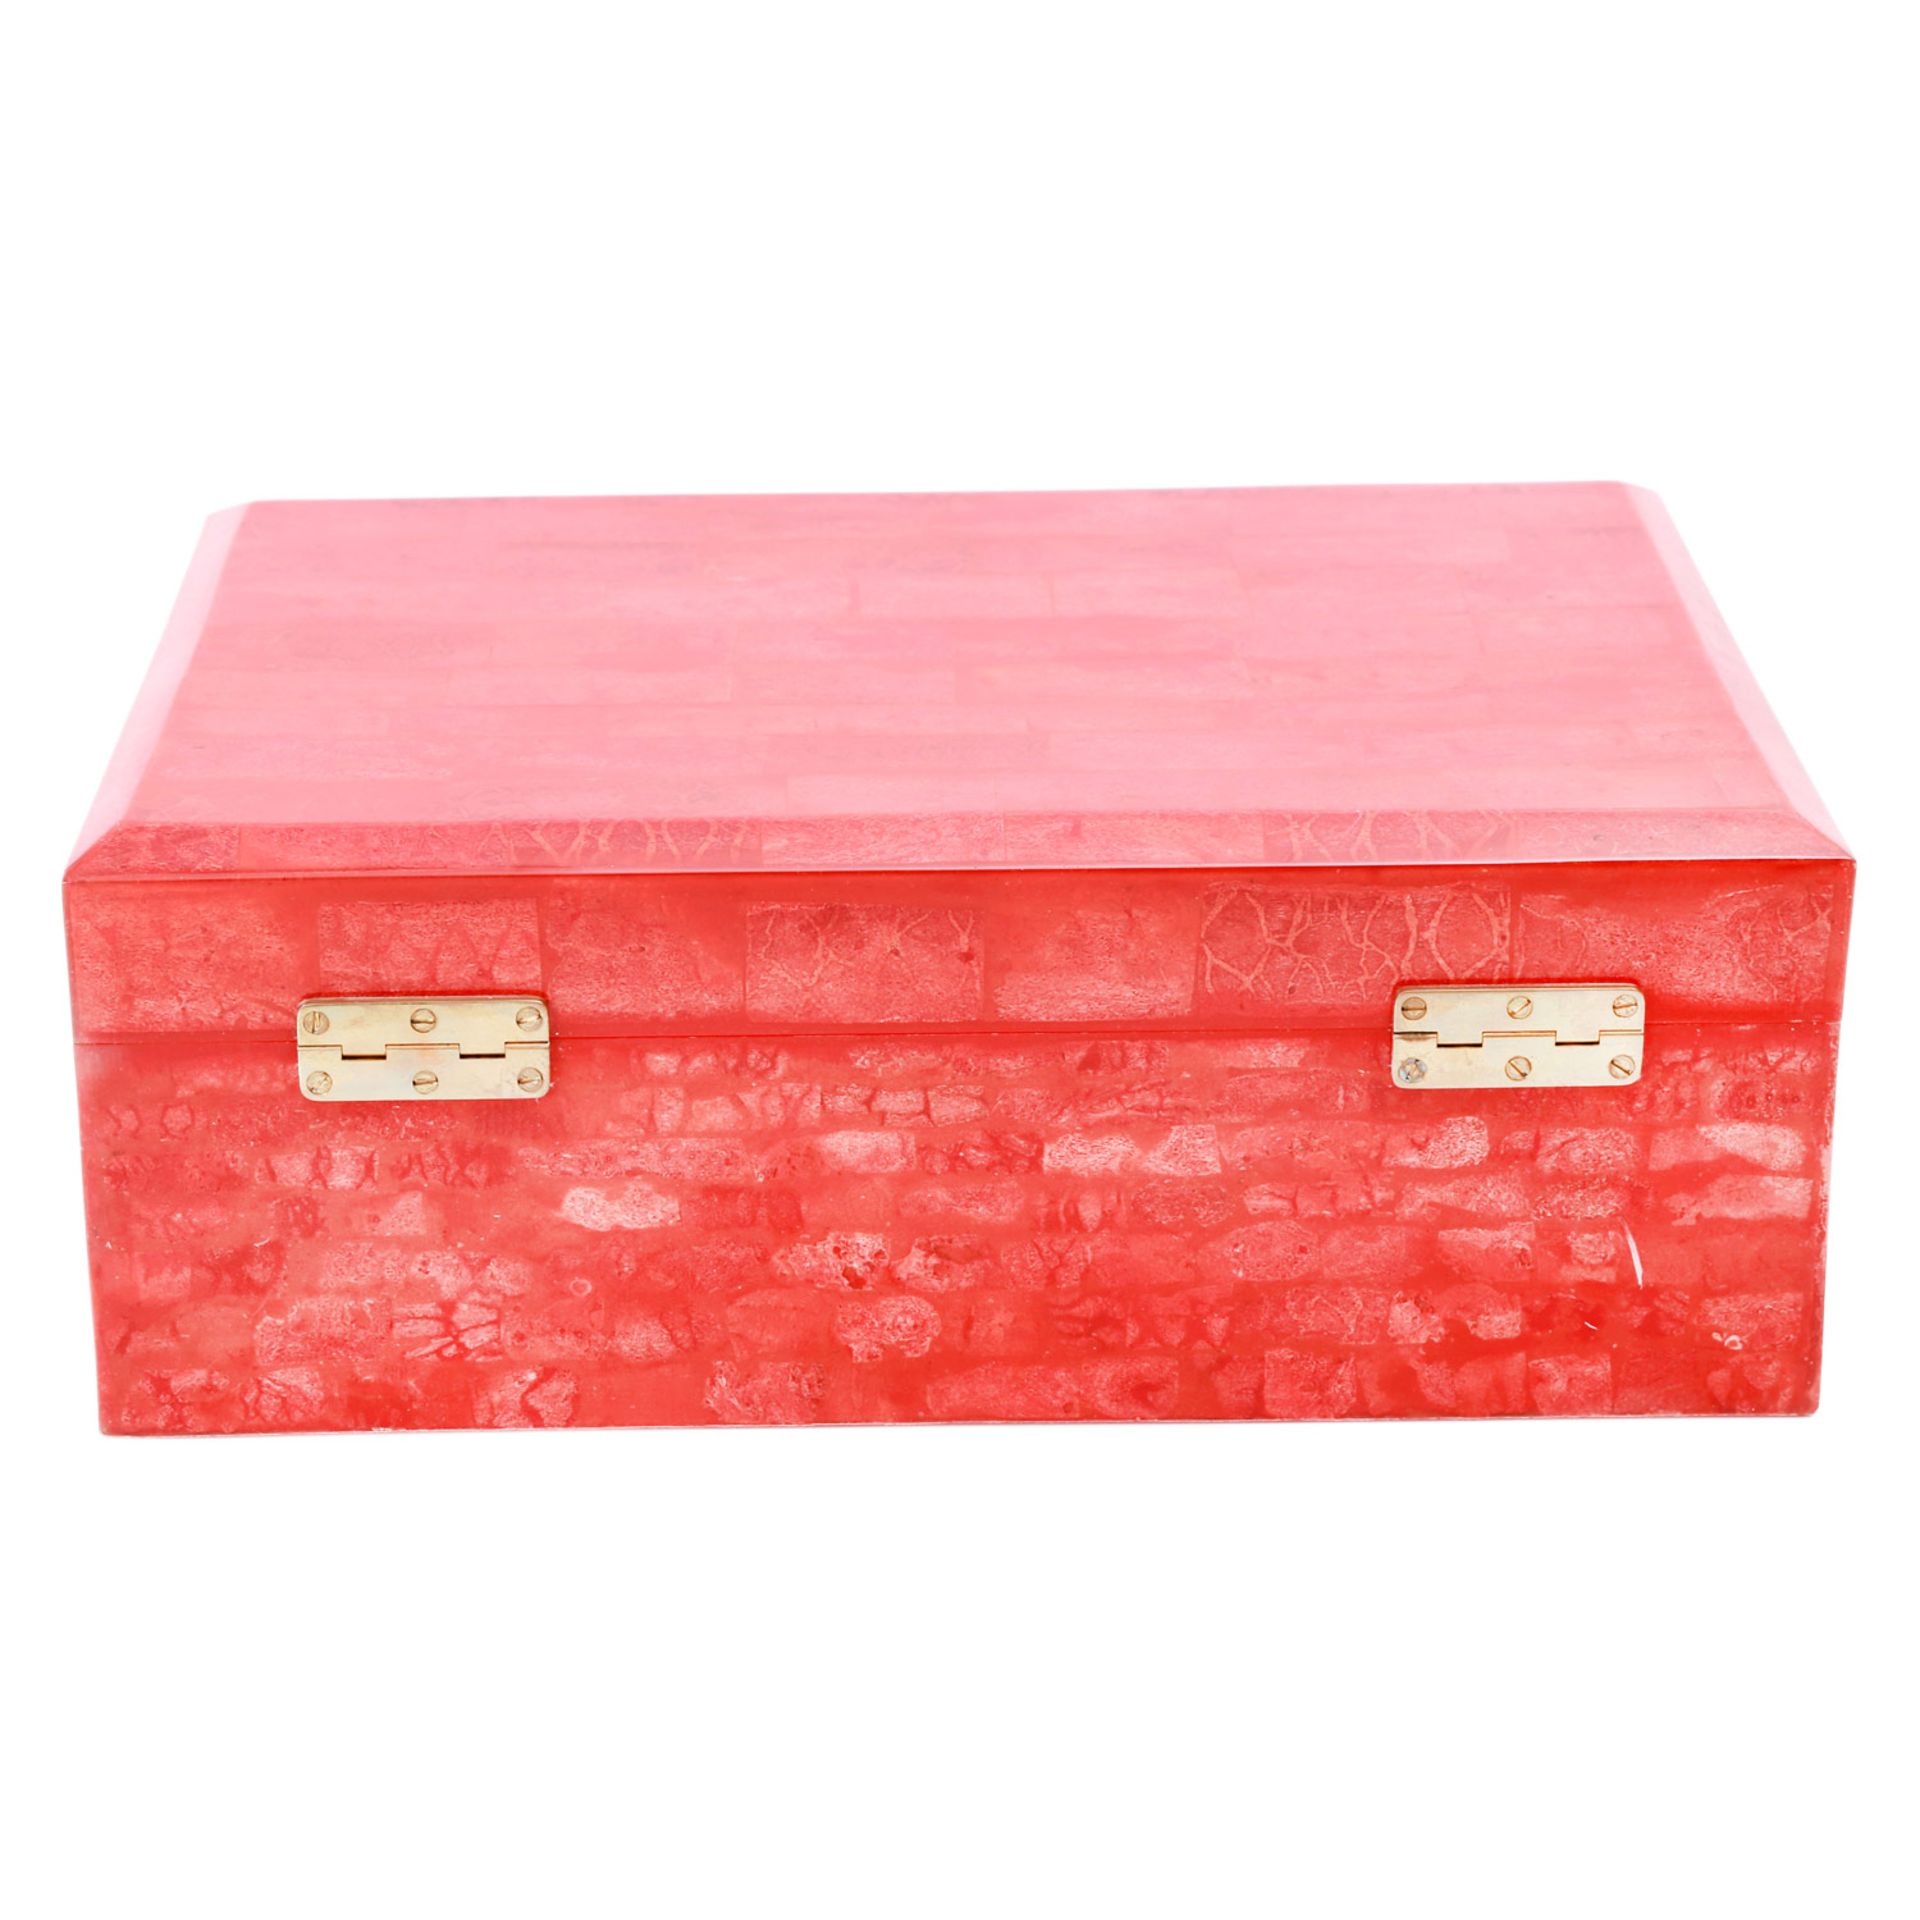 Schmuckkassette. Große Box in Hochglanzlack Rot, marmoriertes Design, rotes Innenfutter, - Bild 4 aus 6